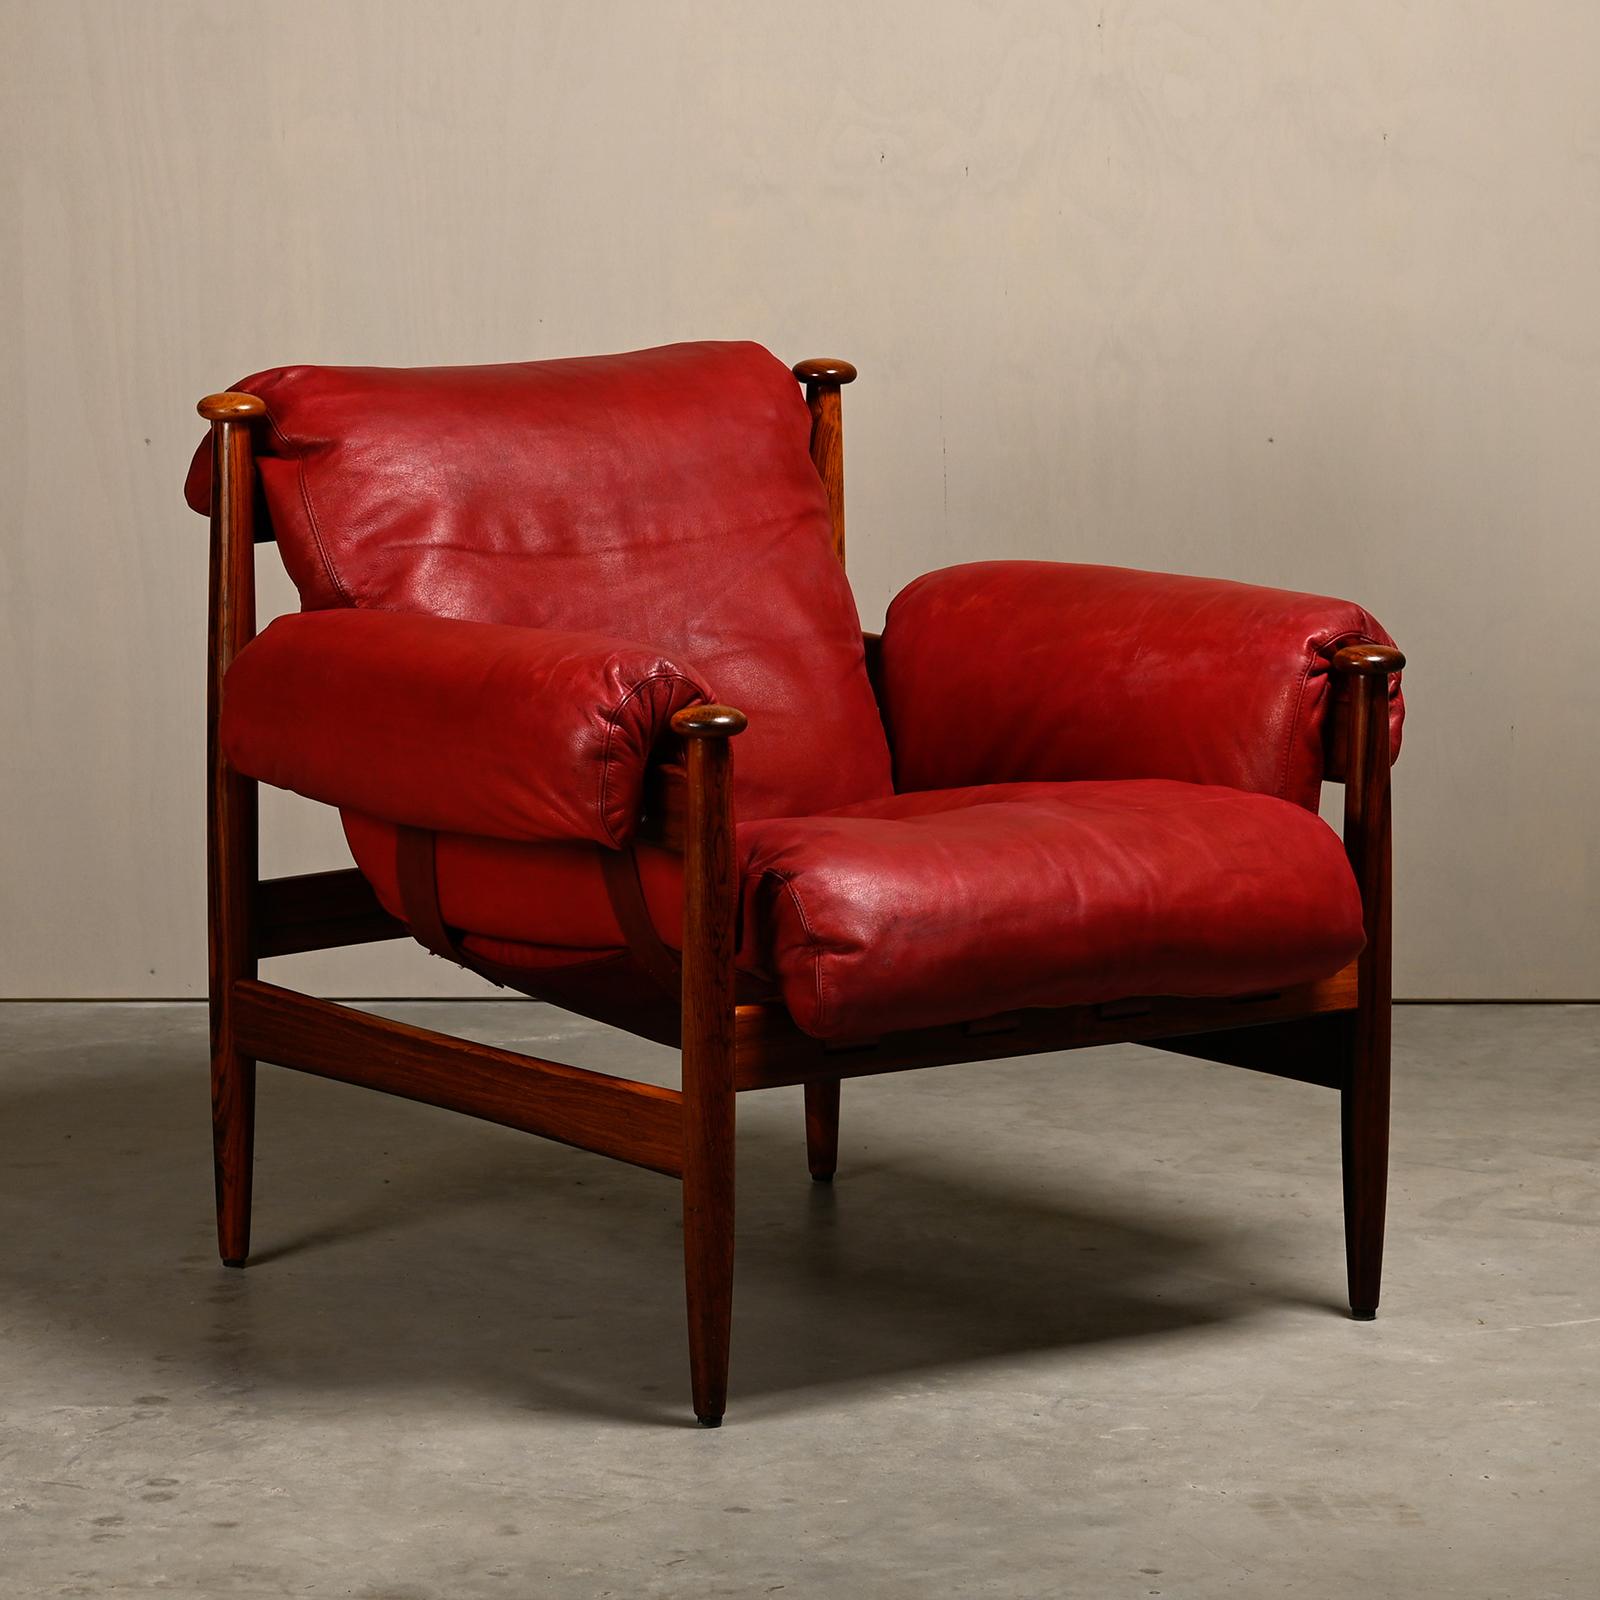 Bequemer brasilianisch inspirierter (Safari-)Sessel, Modell Amiral, entworfen von Eric Merthen für IRE Möbler Sweden, 1960er Jahre. Gestell aus Palisanderholz mit abnehmbaren Lederkissen, die von einer dicken Lederhängematte getragen werden. Die